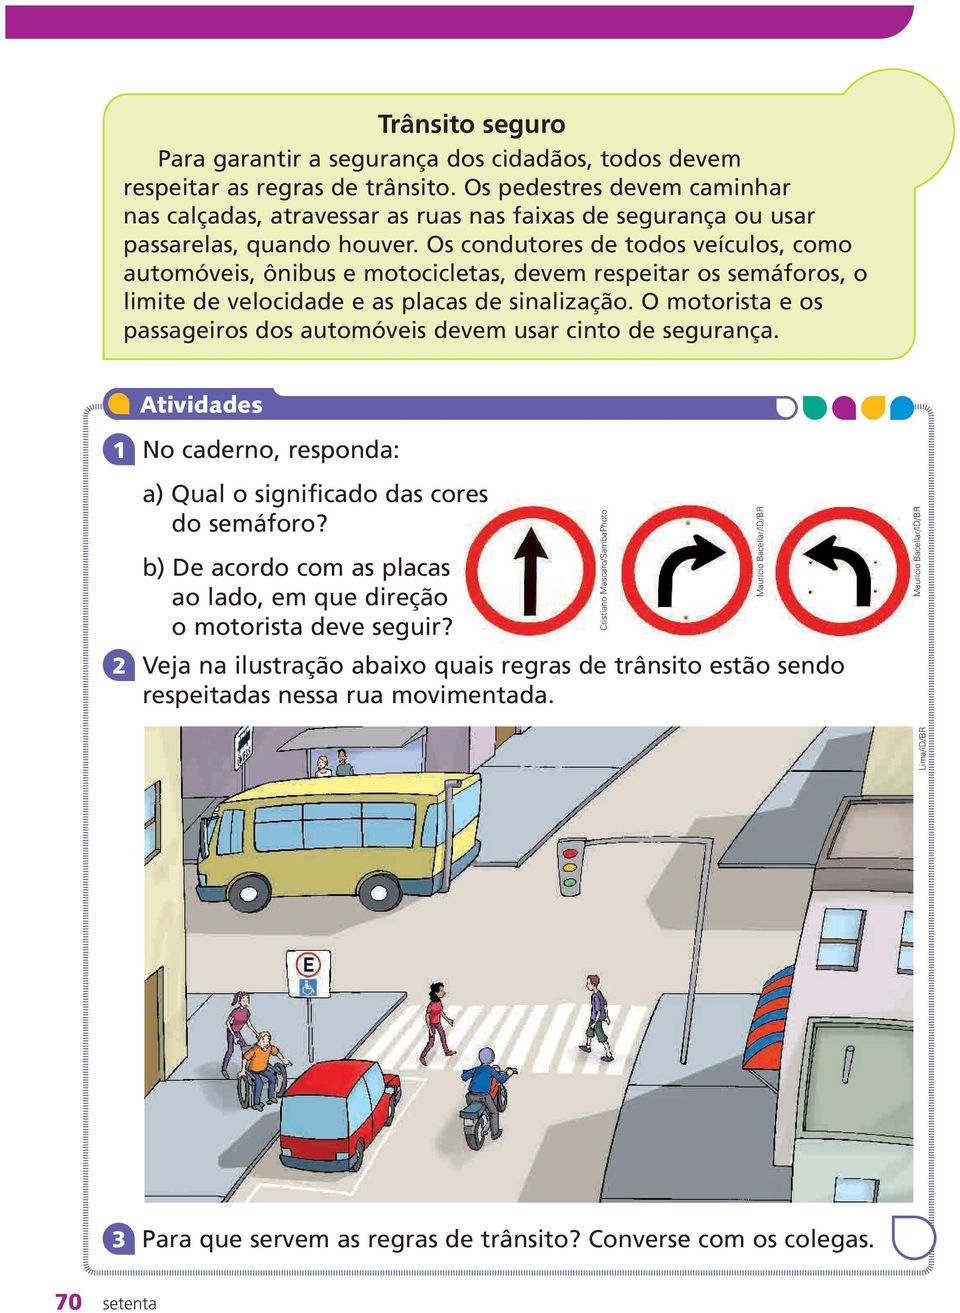 Os condutores de todos veículos, como automóveis, ônibus e motocicletas, devem respeitar os semáforos, o limite de velocidade e as placas de sinalização.